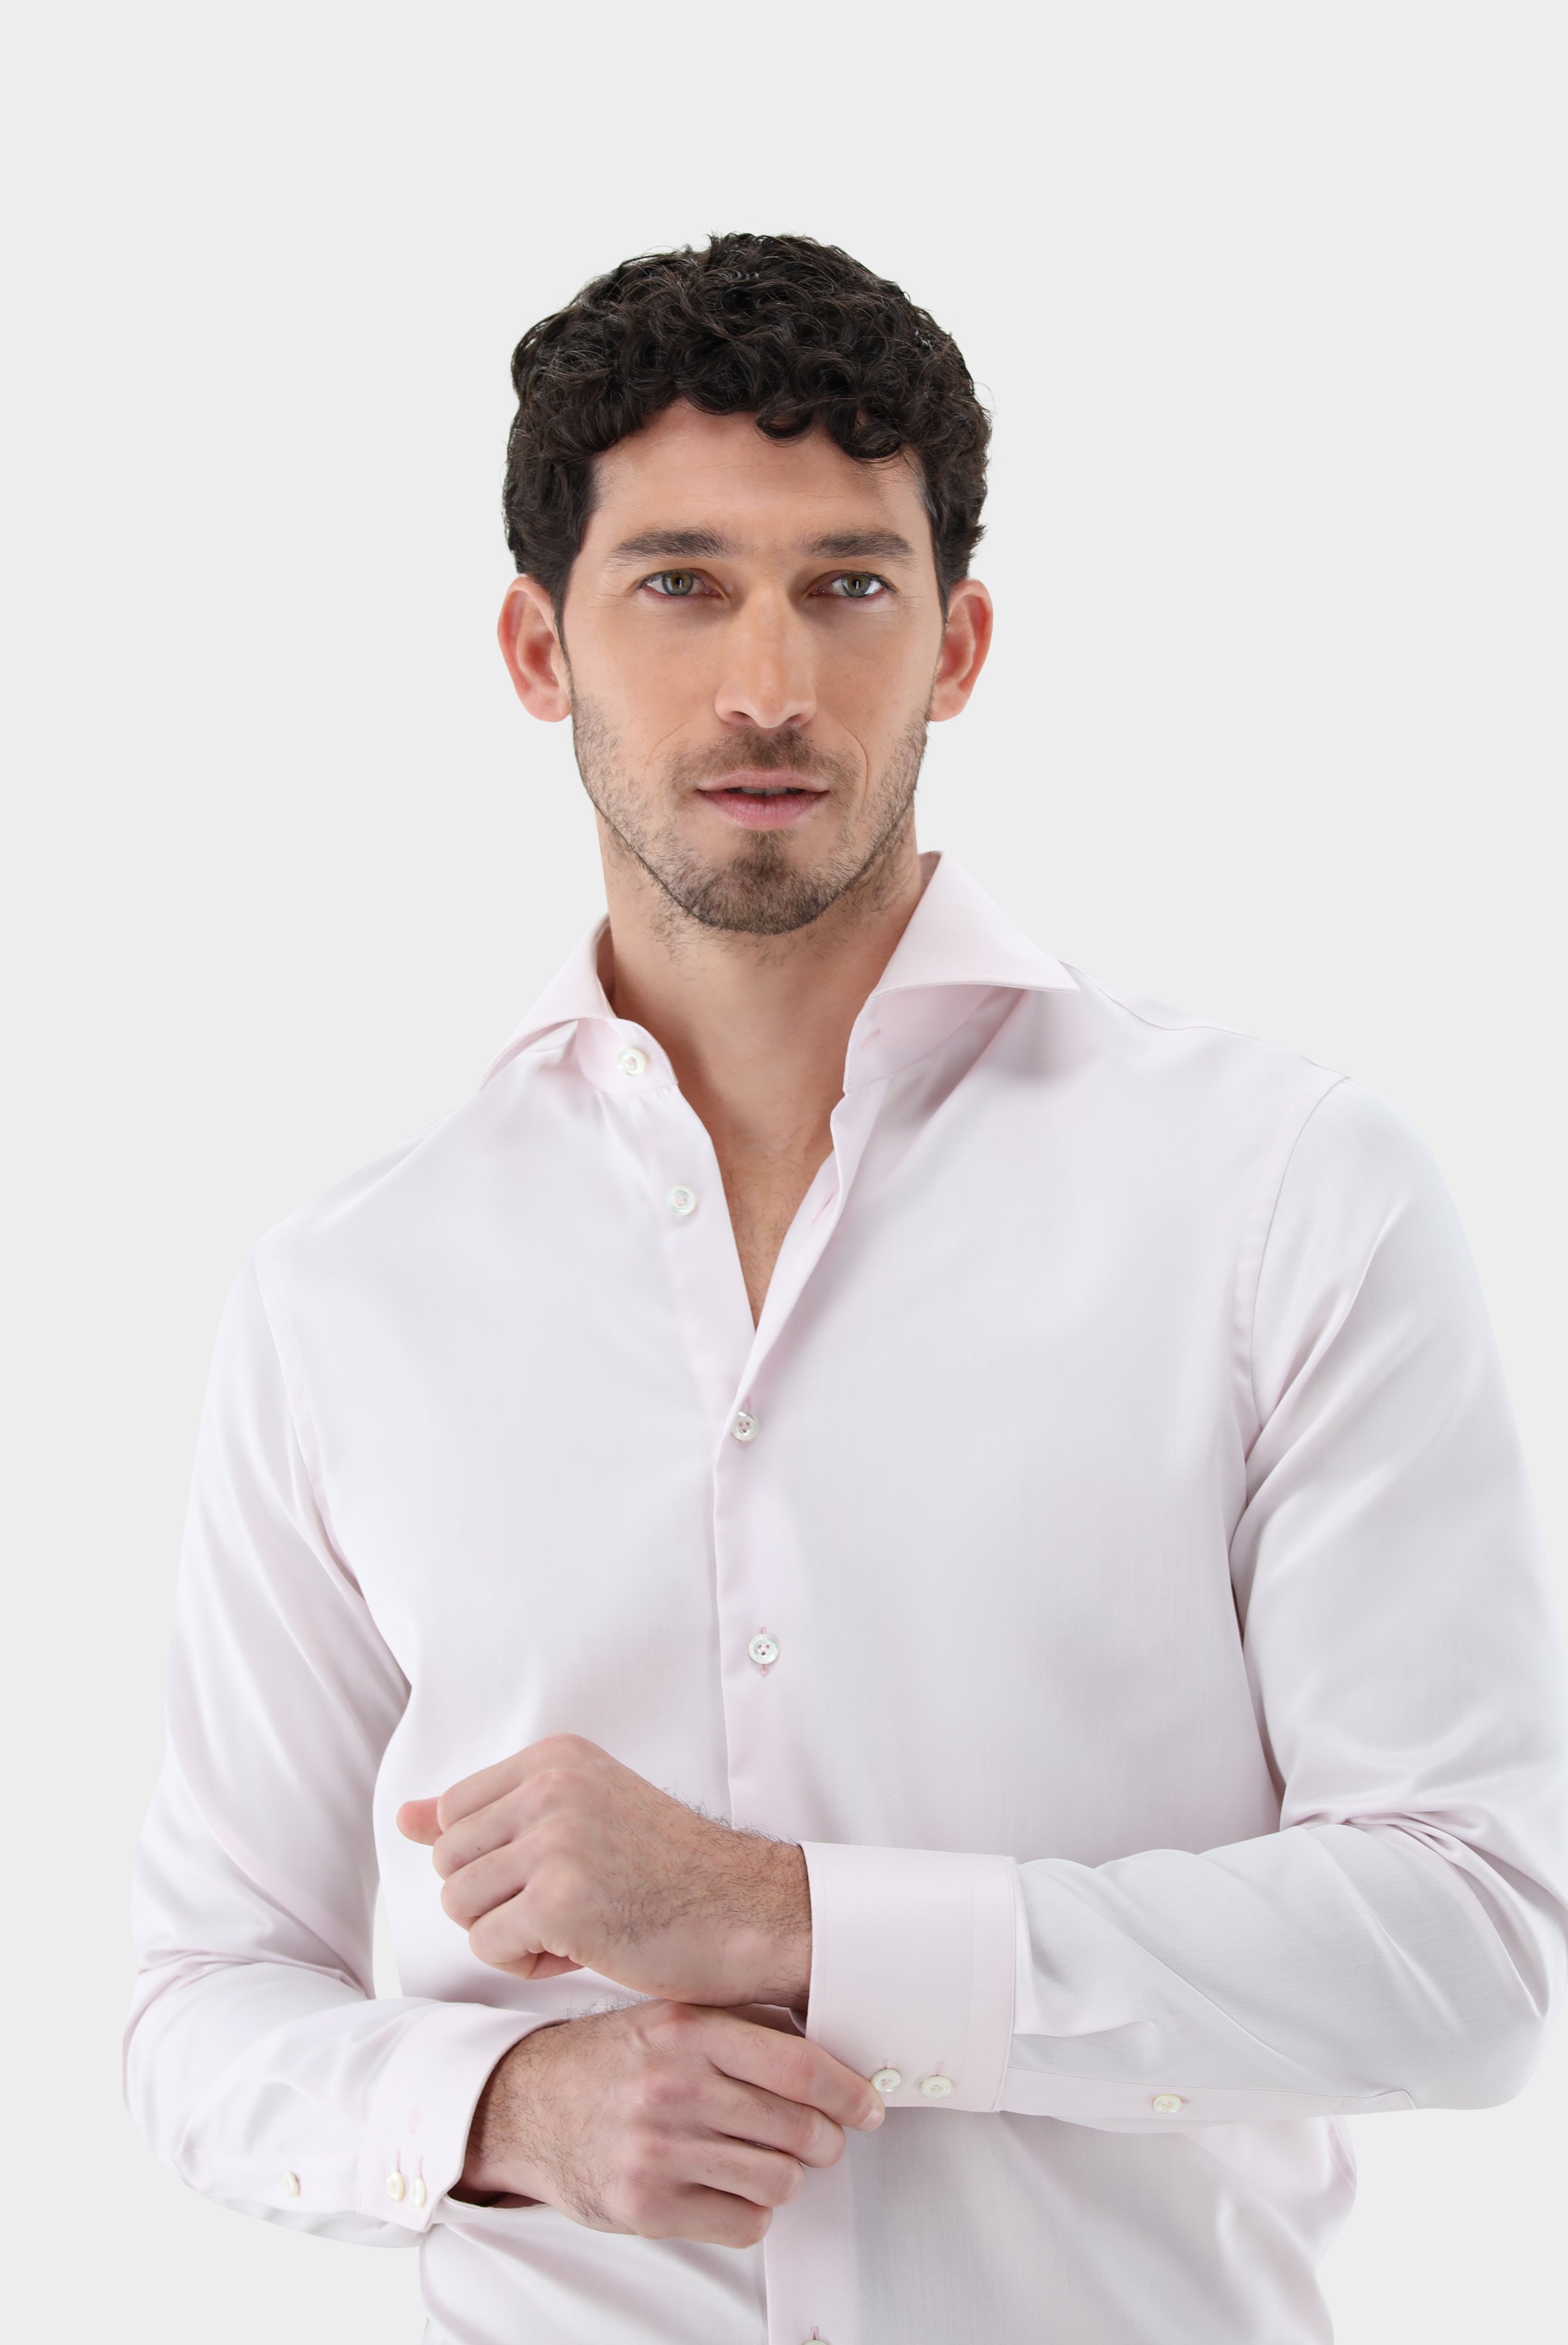 Bügelleichte Hemden+Bügelfreies Twill Hemd Slim Fit+20.2019.BQ.132241.510.39